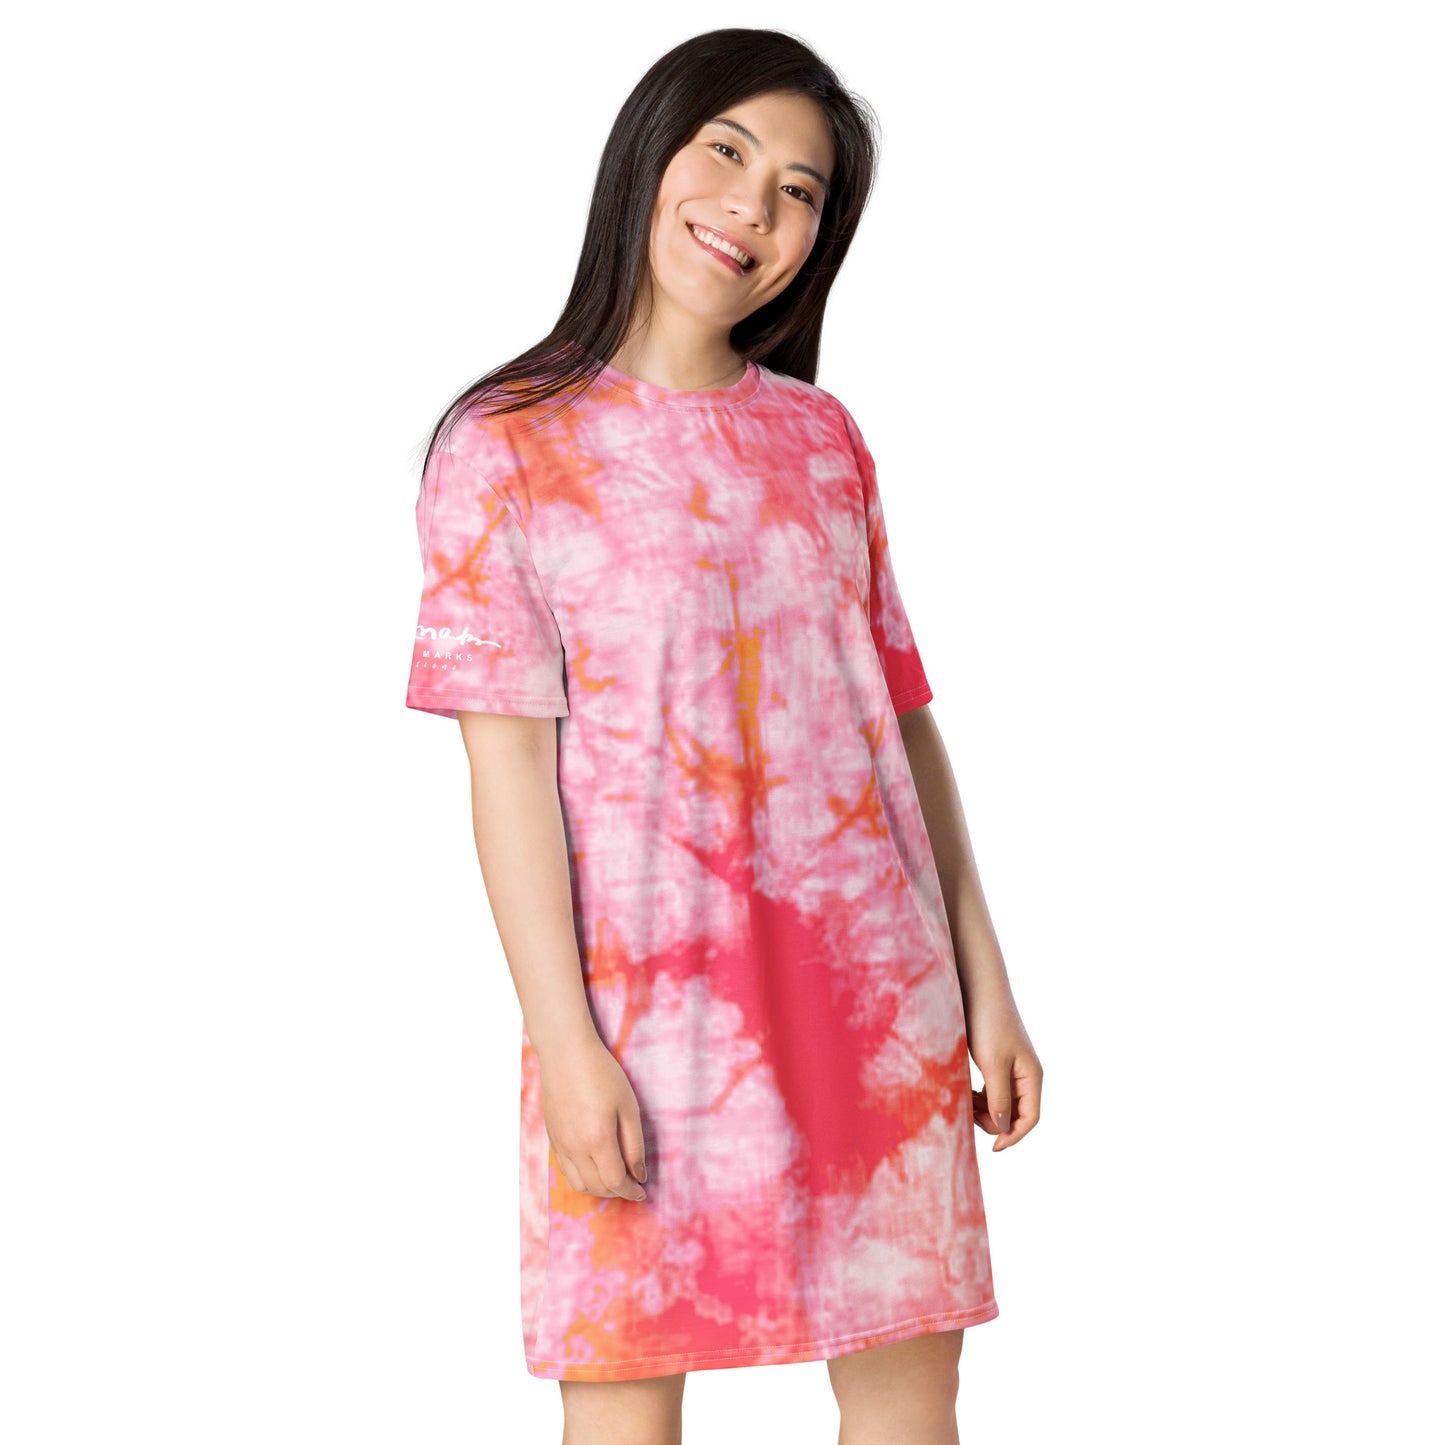 Fantasia Tie Dye T-shirt dress